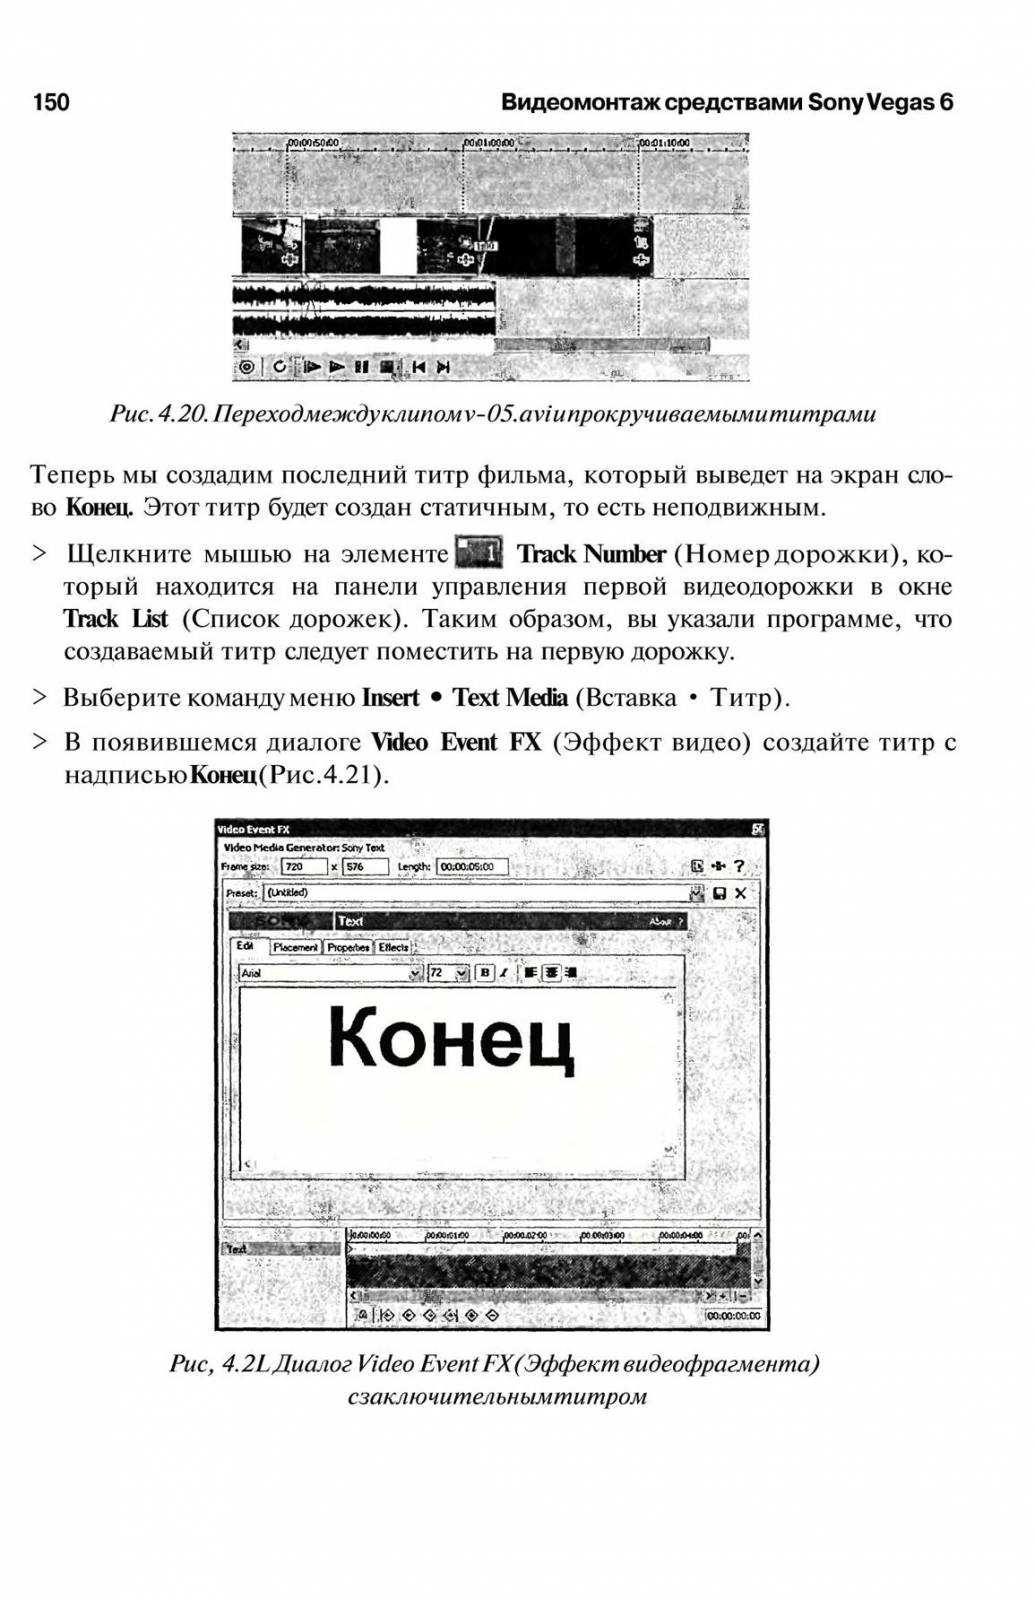 http://redaktori-uroki.3dn.ru/_ph/6/912960663.jpg